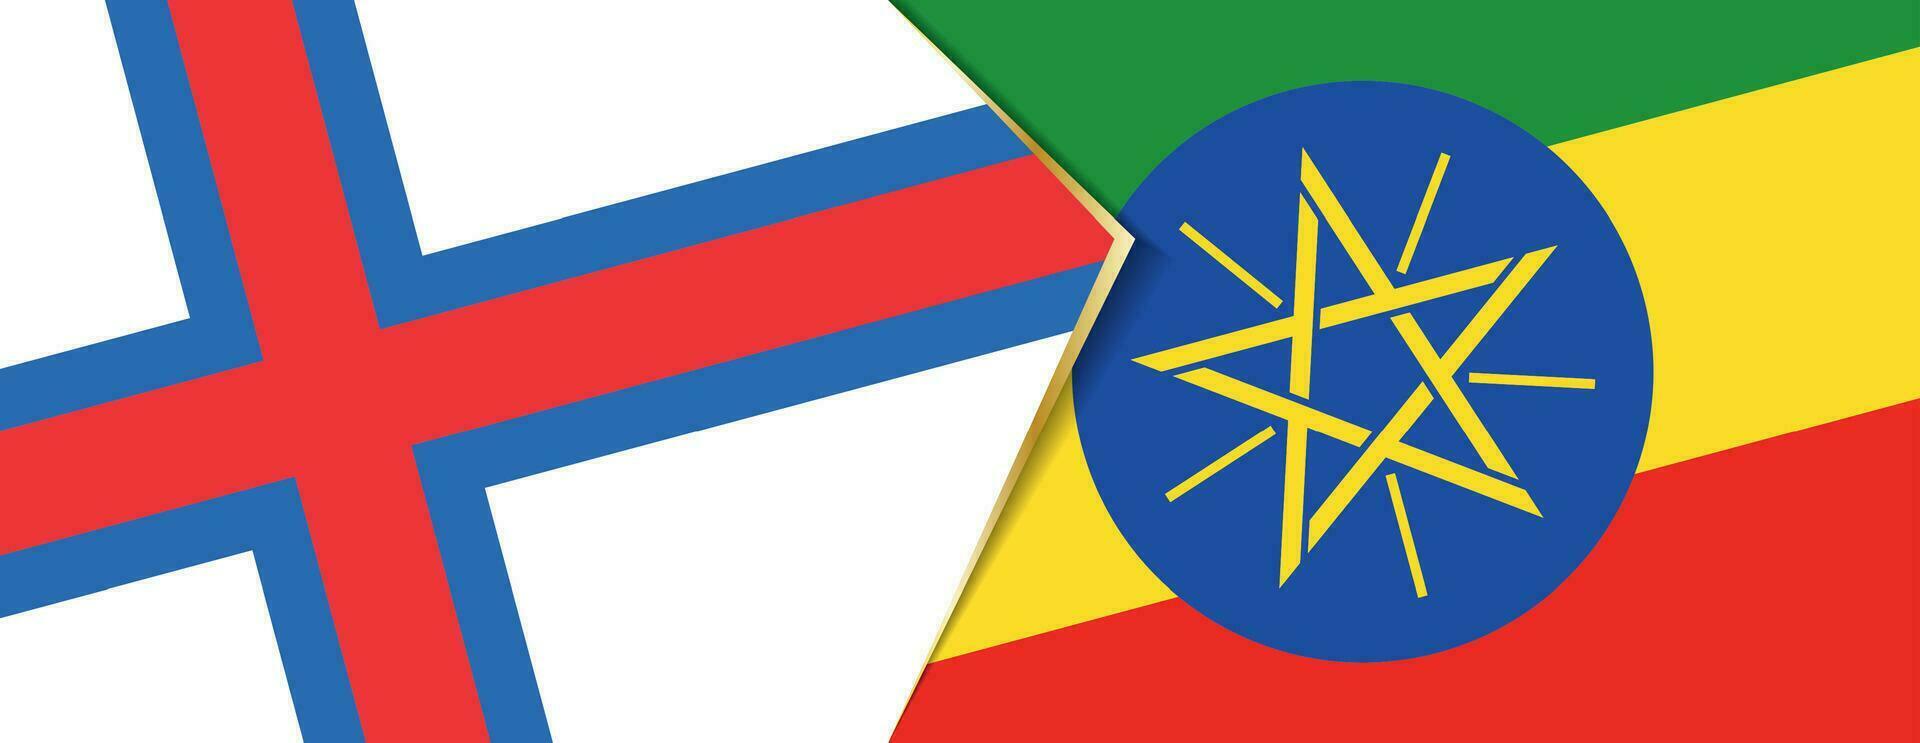 Färöer Inseln und Äthiopien Flaggen, zwei Vektor Flaggen.